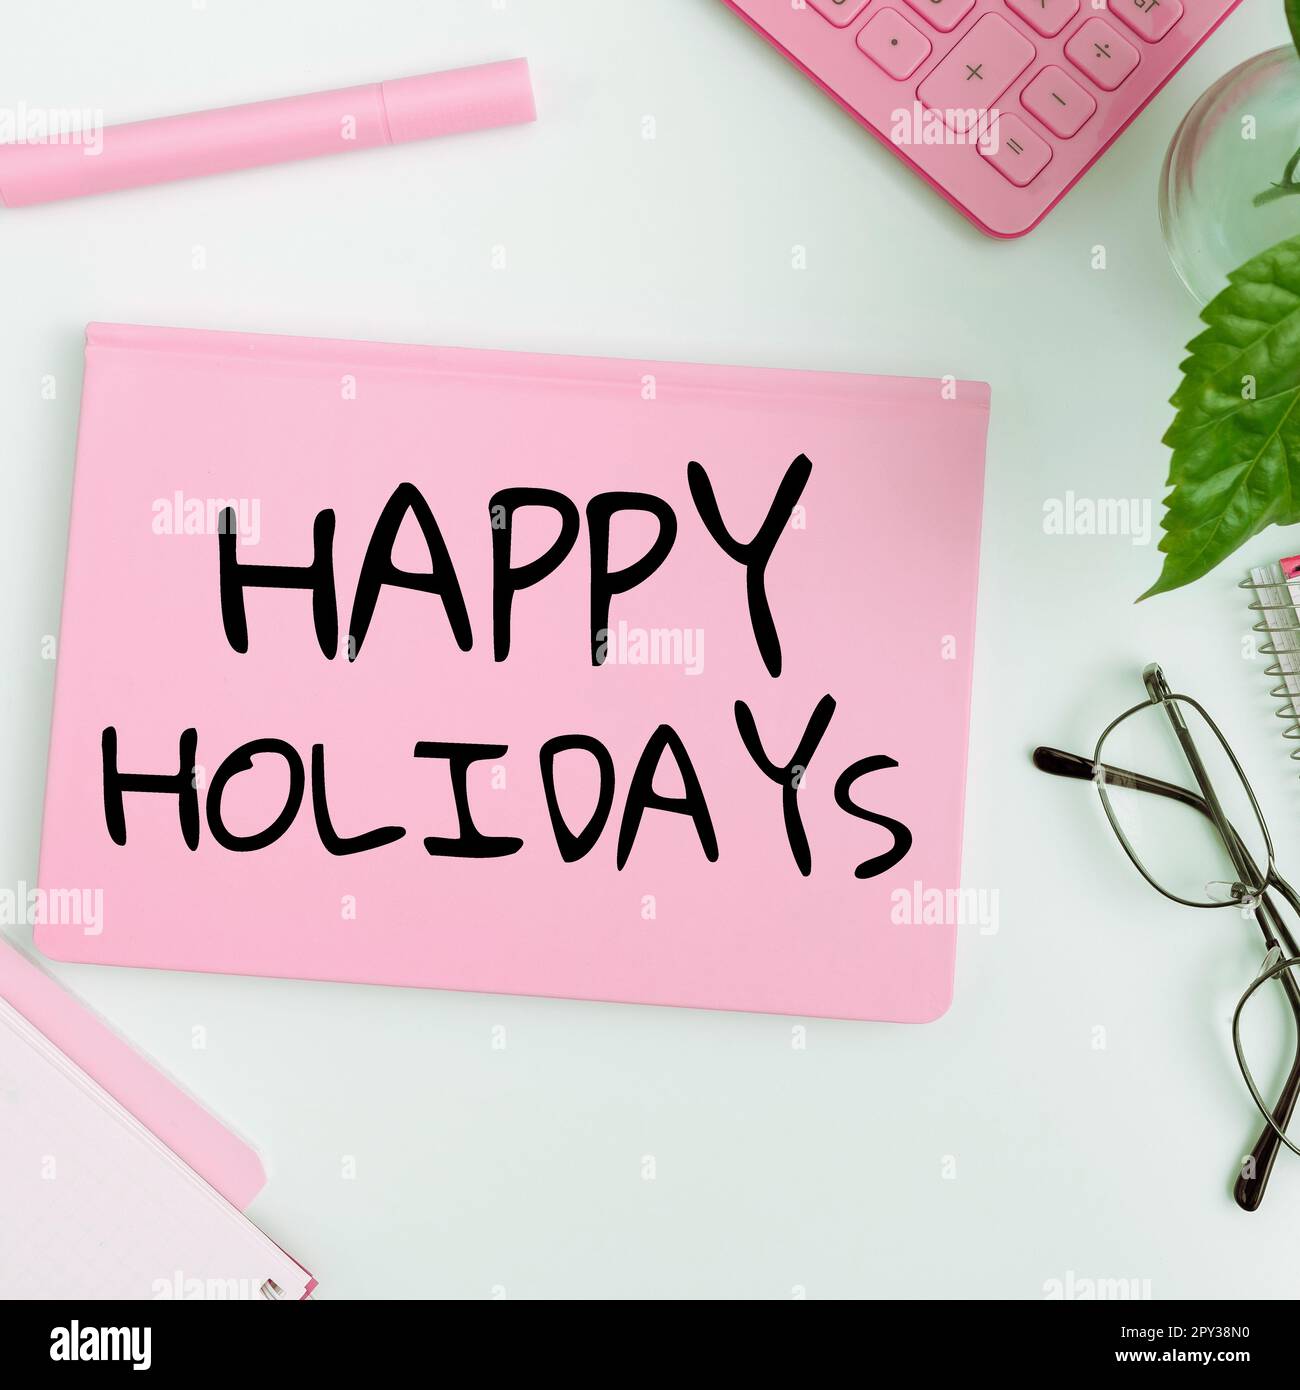 Affiche textuelle montrant Happy Holidays, salutation de concept d'affaires utilisée pour reconnaître la célébration de nombreuses vacances Banque D'Images